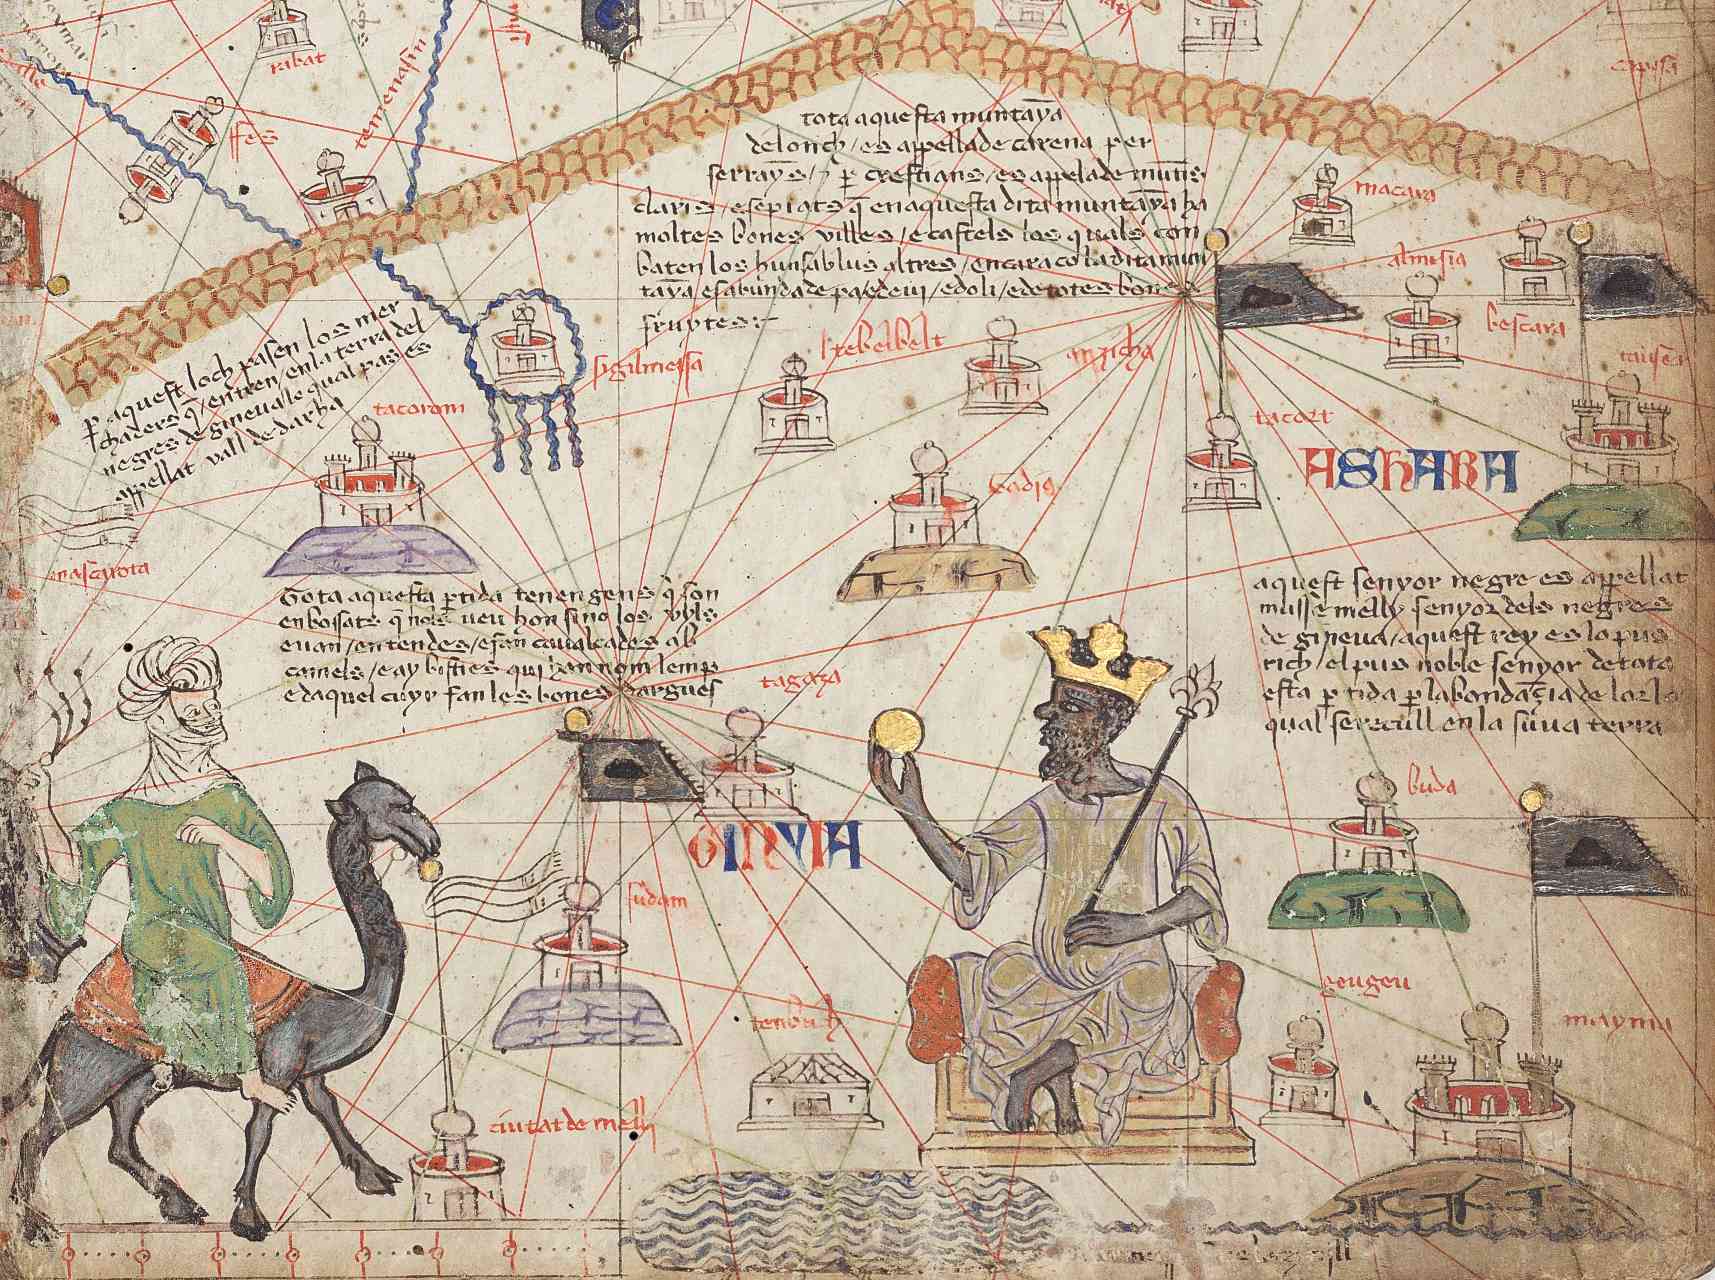 Détail de la feuille 6 de l'Atlas catalan montrant le Sahara occidental. Les montagnes de l'Atlas sont en haut et le fleuve Niger en bas. Mansa Musa est représenté assis sur un trône et tenant une pièce d'or.